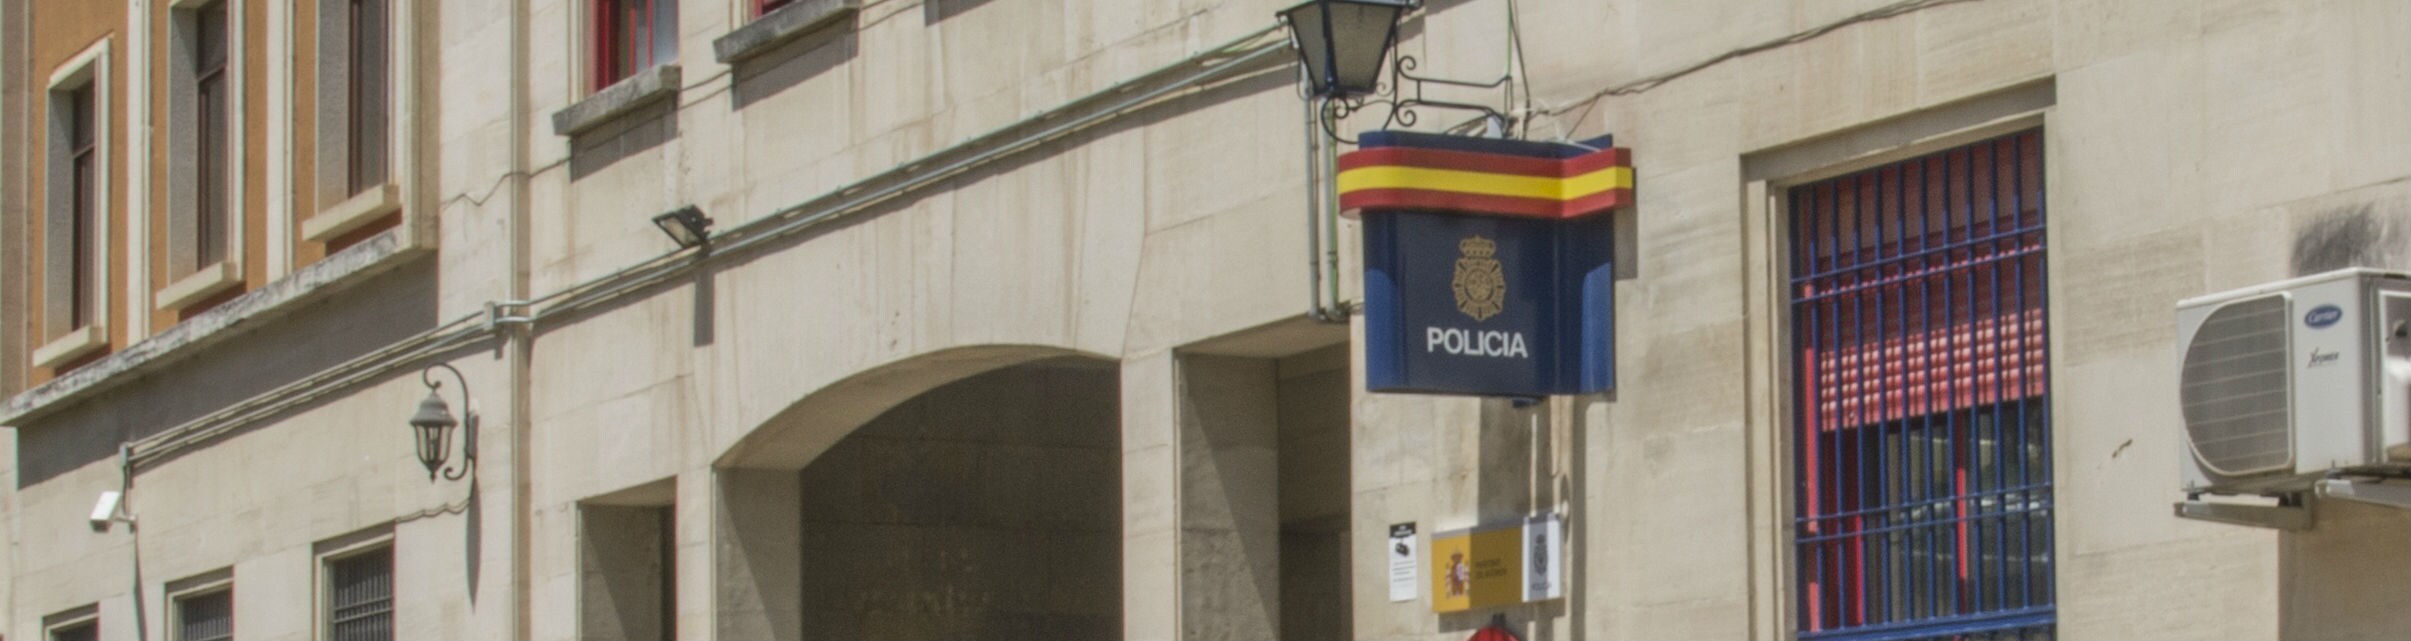 Comisaría central de la Policía Nacional en Jaén.